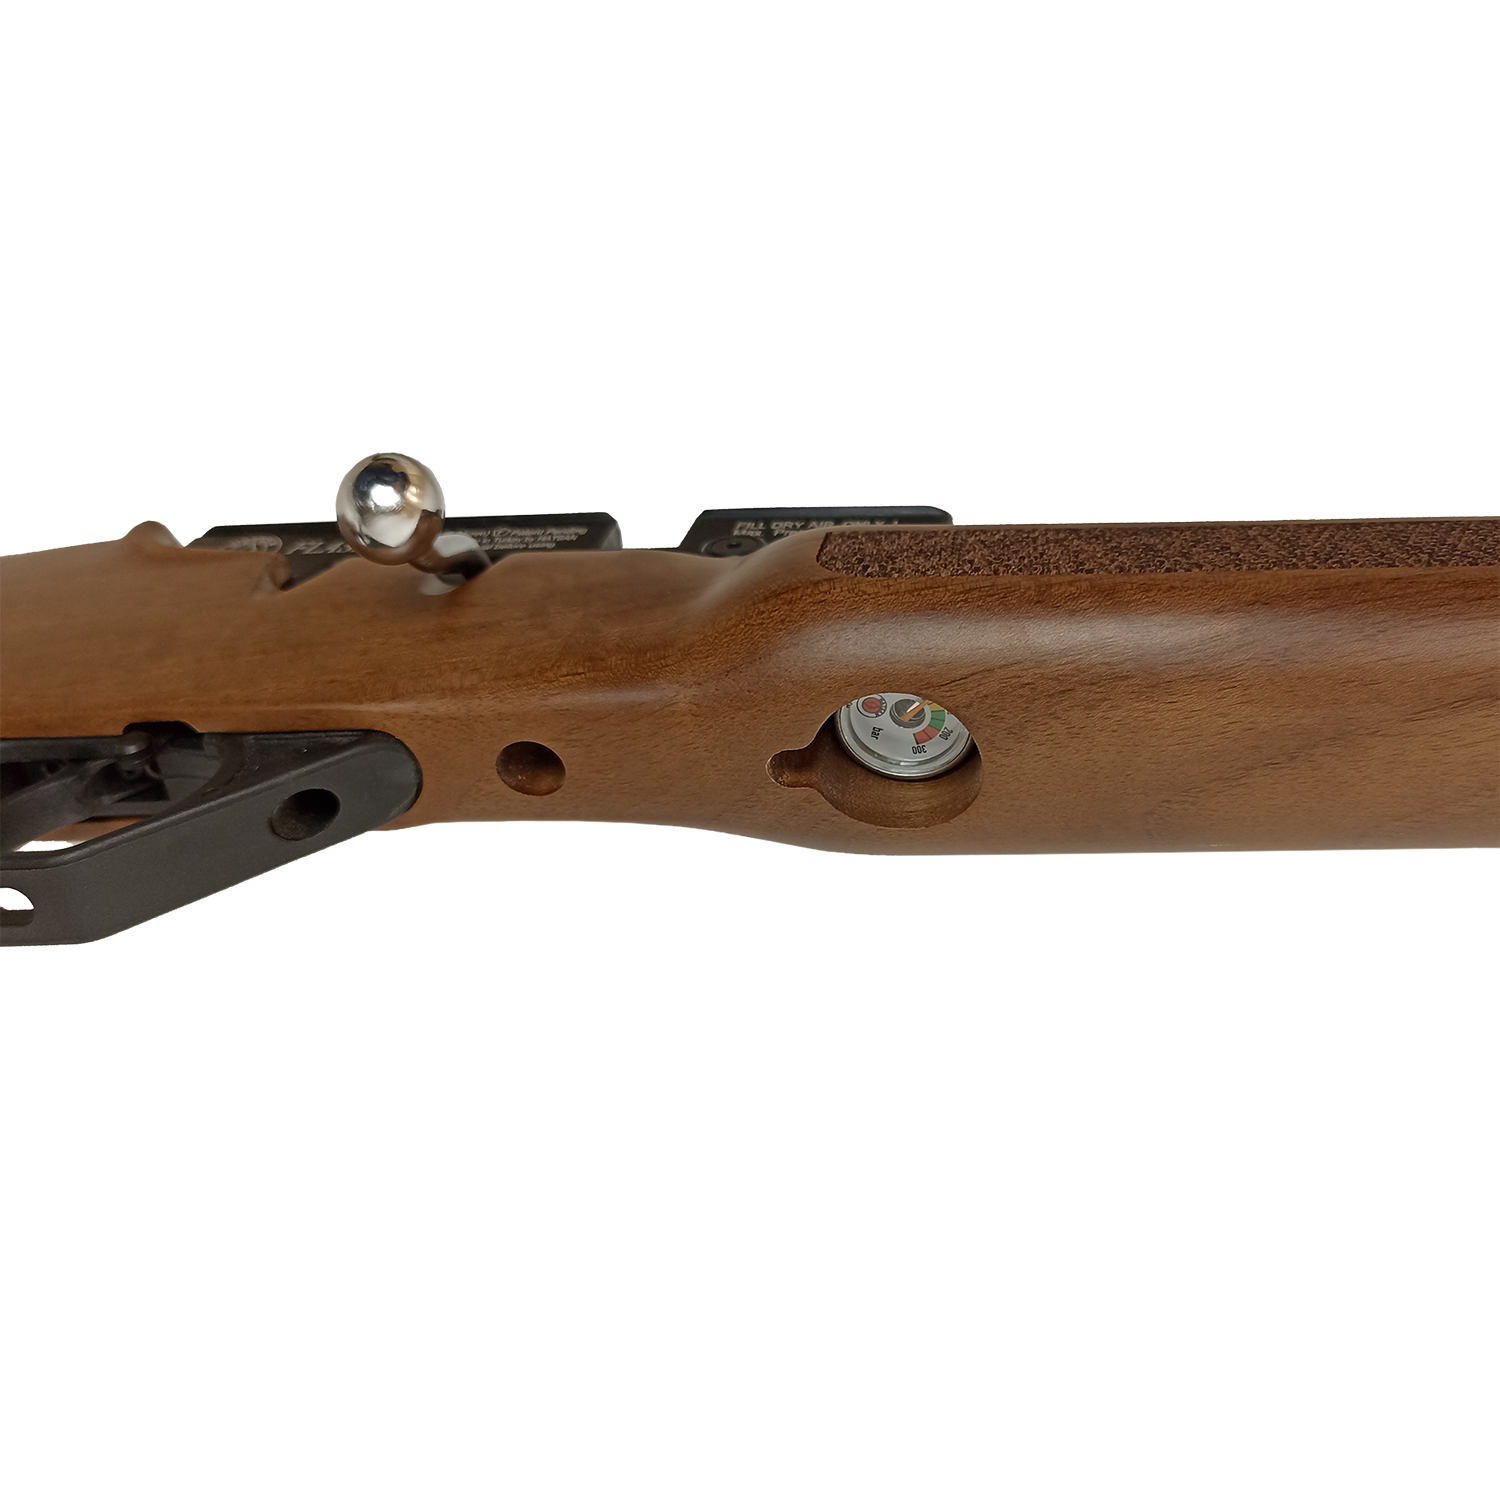 Пневматическая винтовка Hatsan FLASH W, калибр 6,35 мм, 3 Дж, PCP, дерево